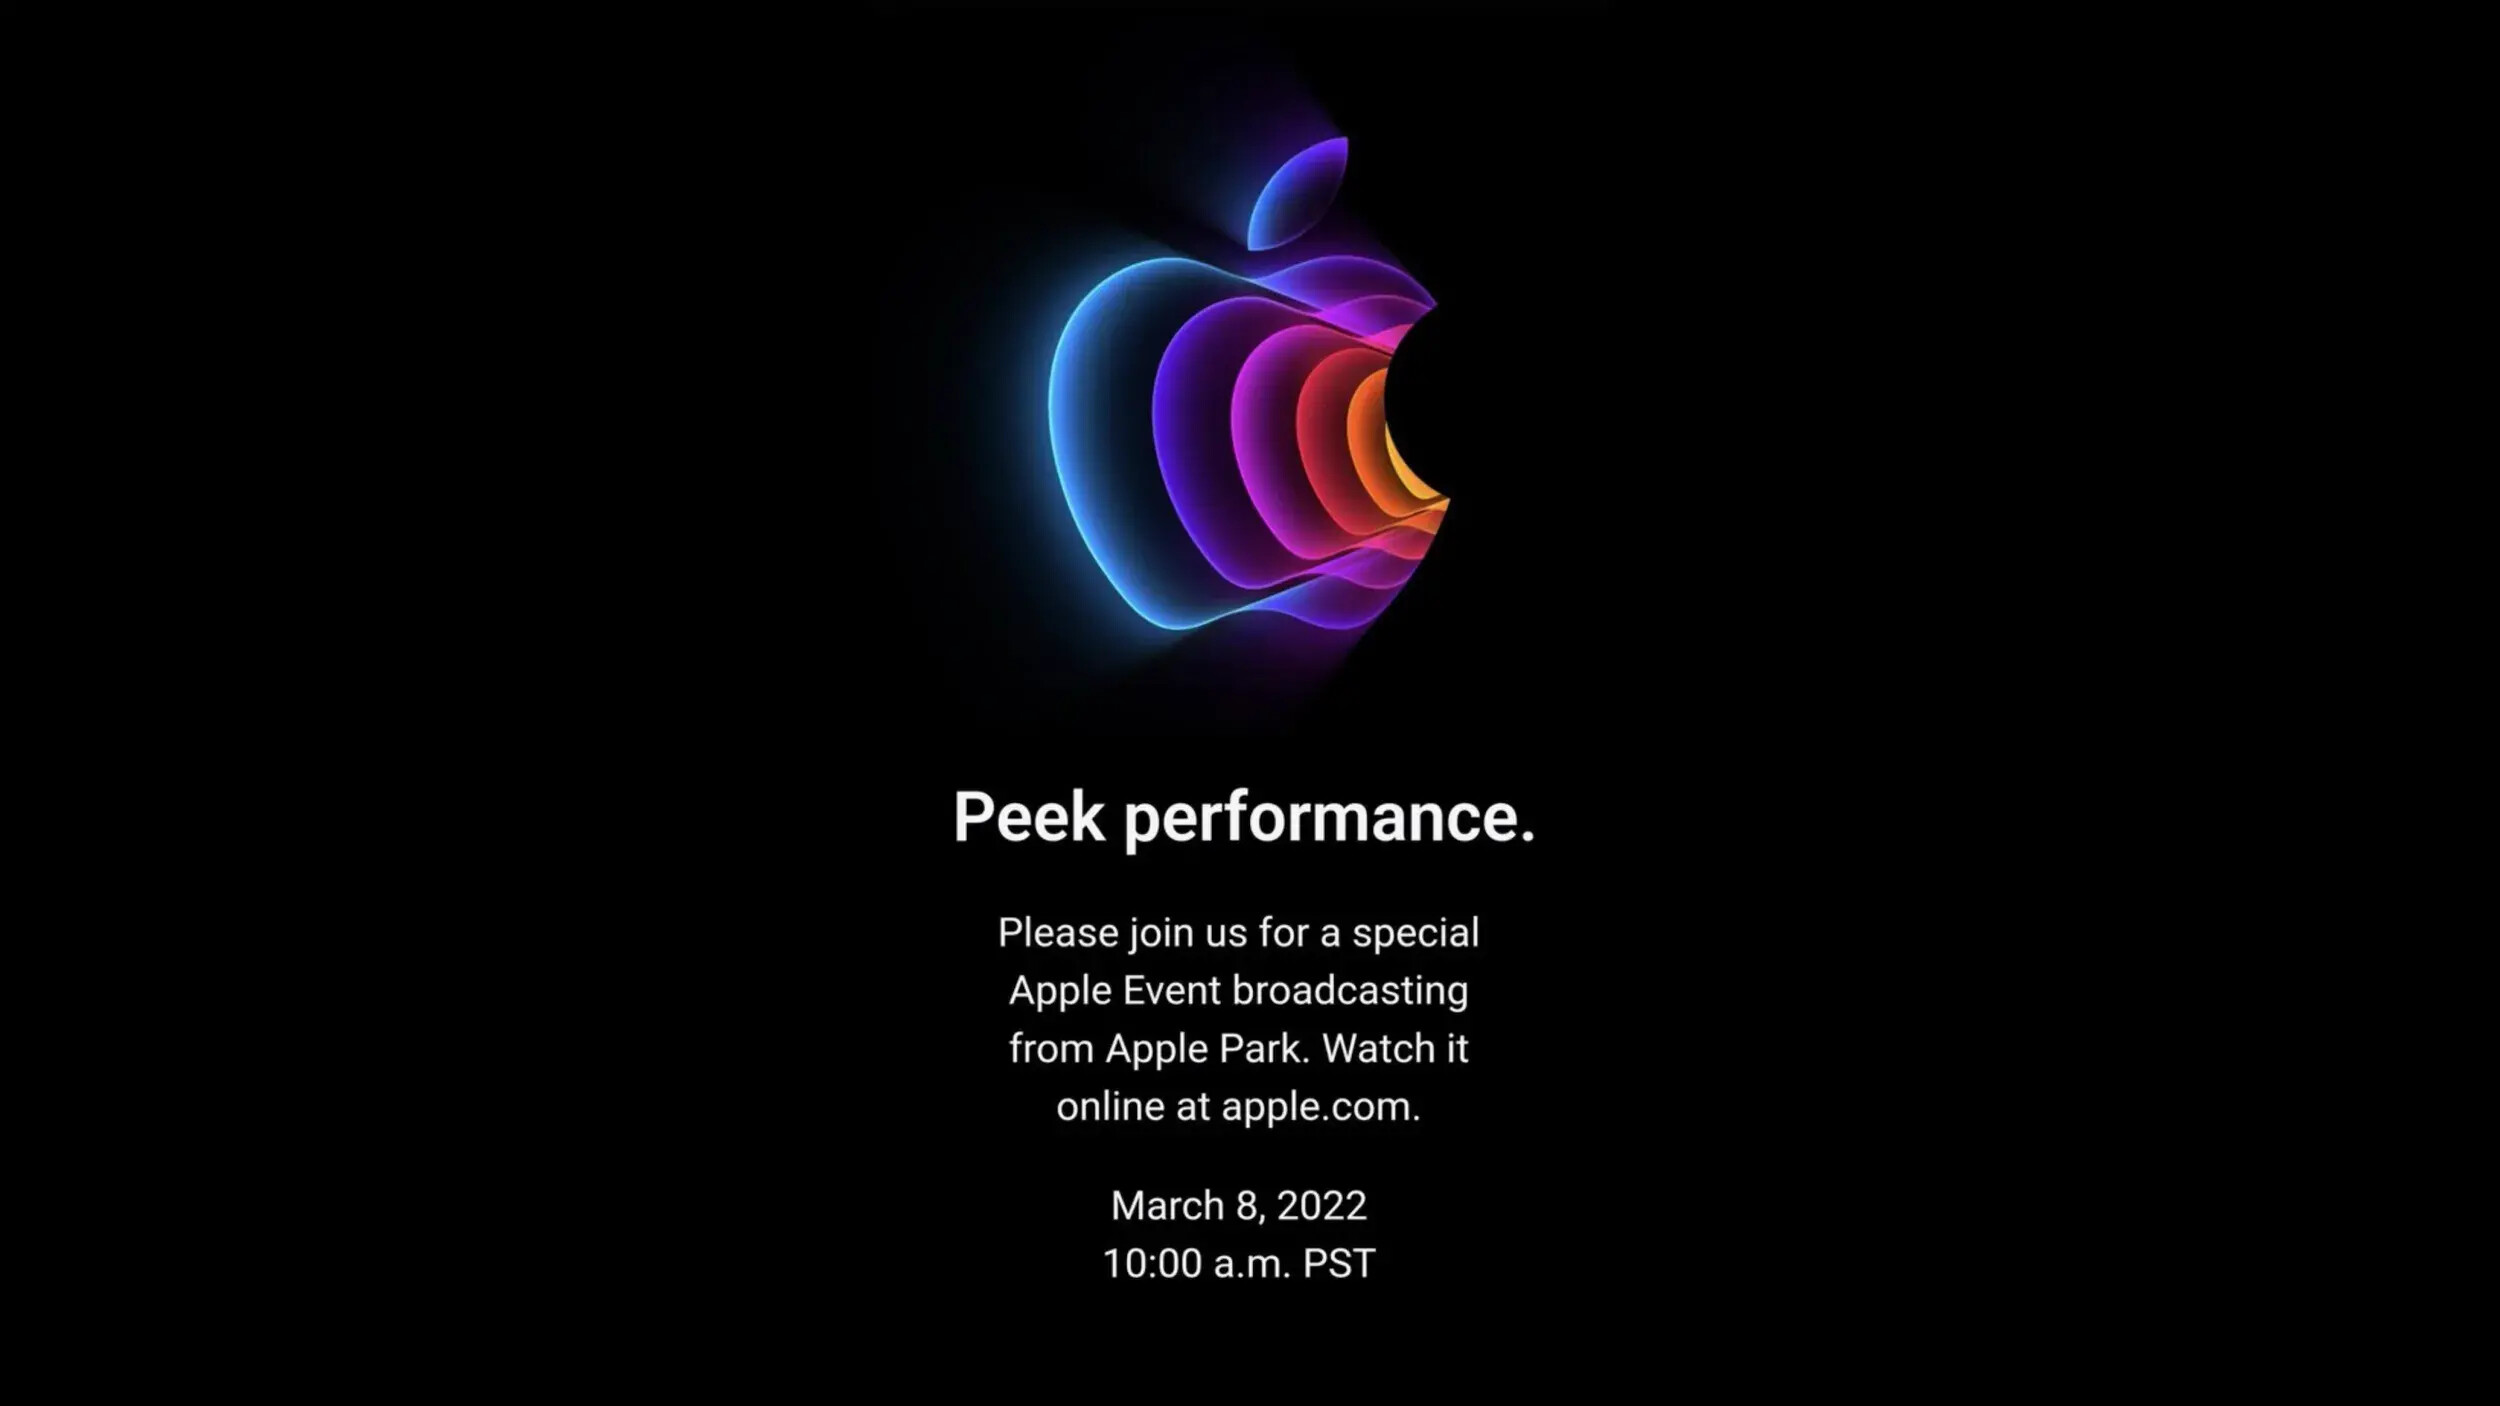 Vielleicht hätte man sich das Logo für das letzte Apple-Event im September 2022 sparen sollen?  - iPhone 14 wird iPhone 13S: Das Meisterwerk von Steve Jobs hat seinen Höhepunkt erreicht, aber Apple macht Max